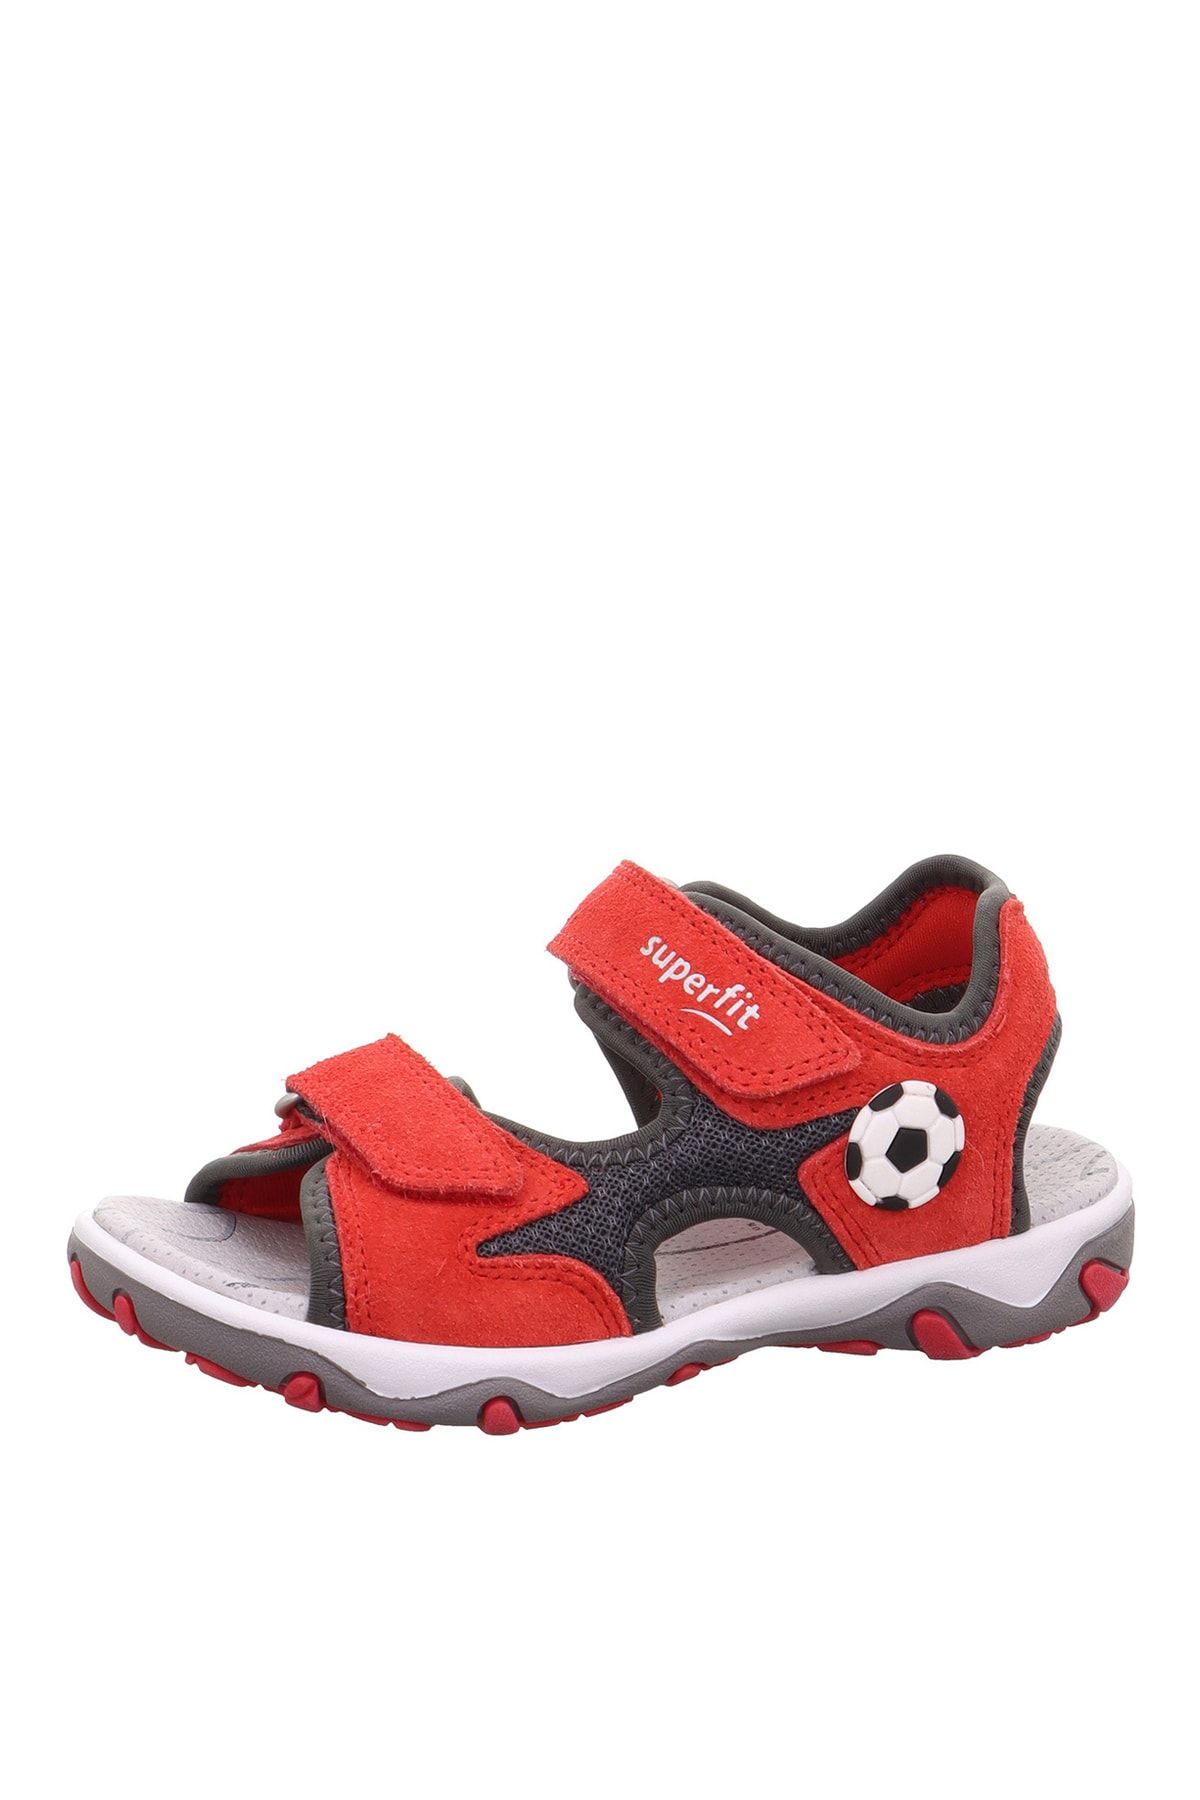 Superfit Kırmızı - Gri Erkek Çocuk Sandalet Mıke 3.0 1-009469-5000-1